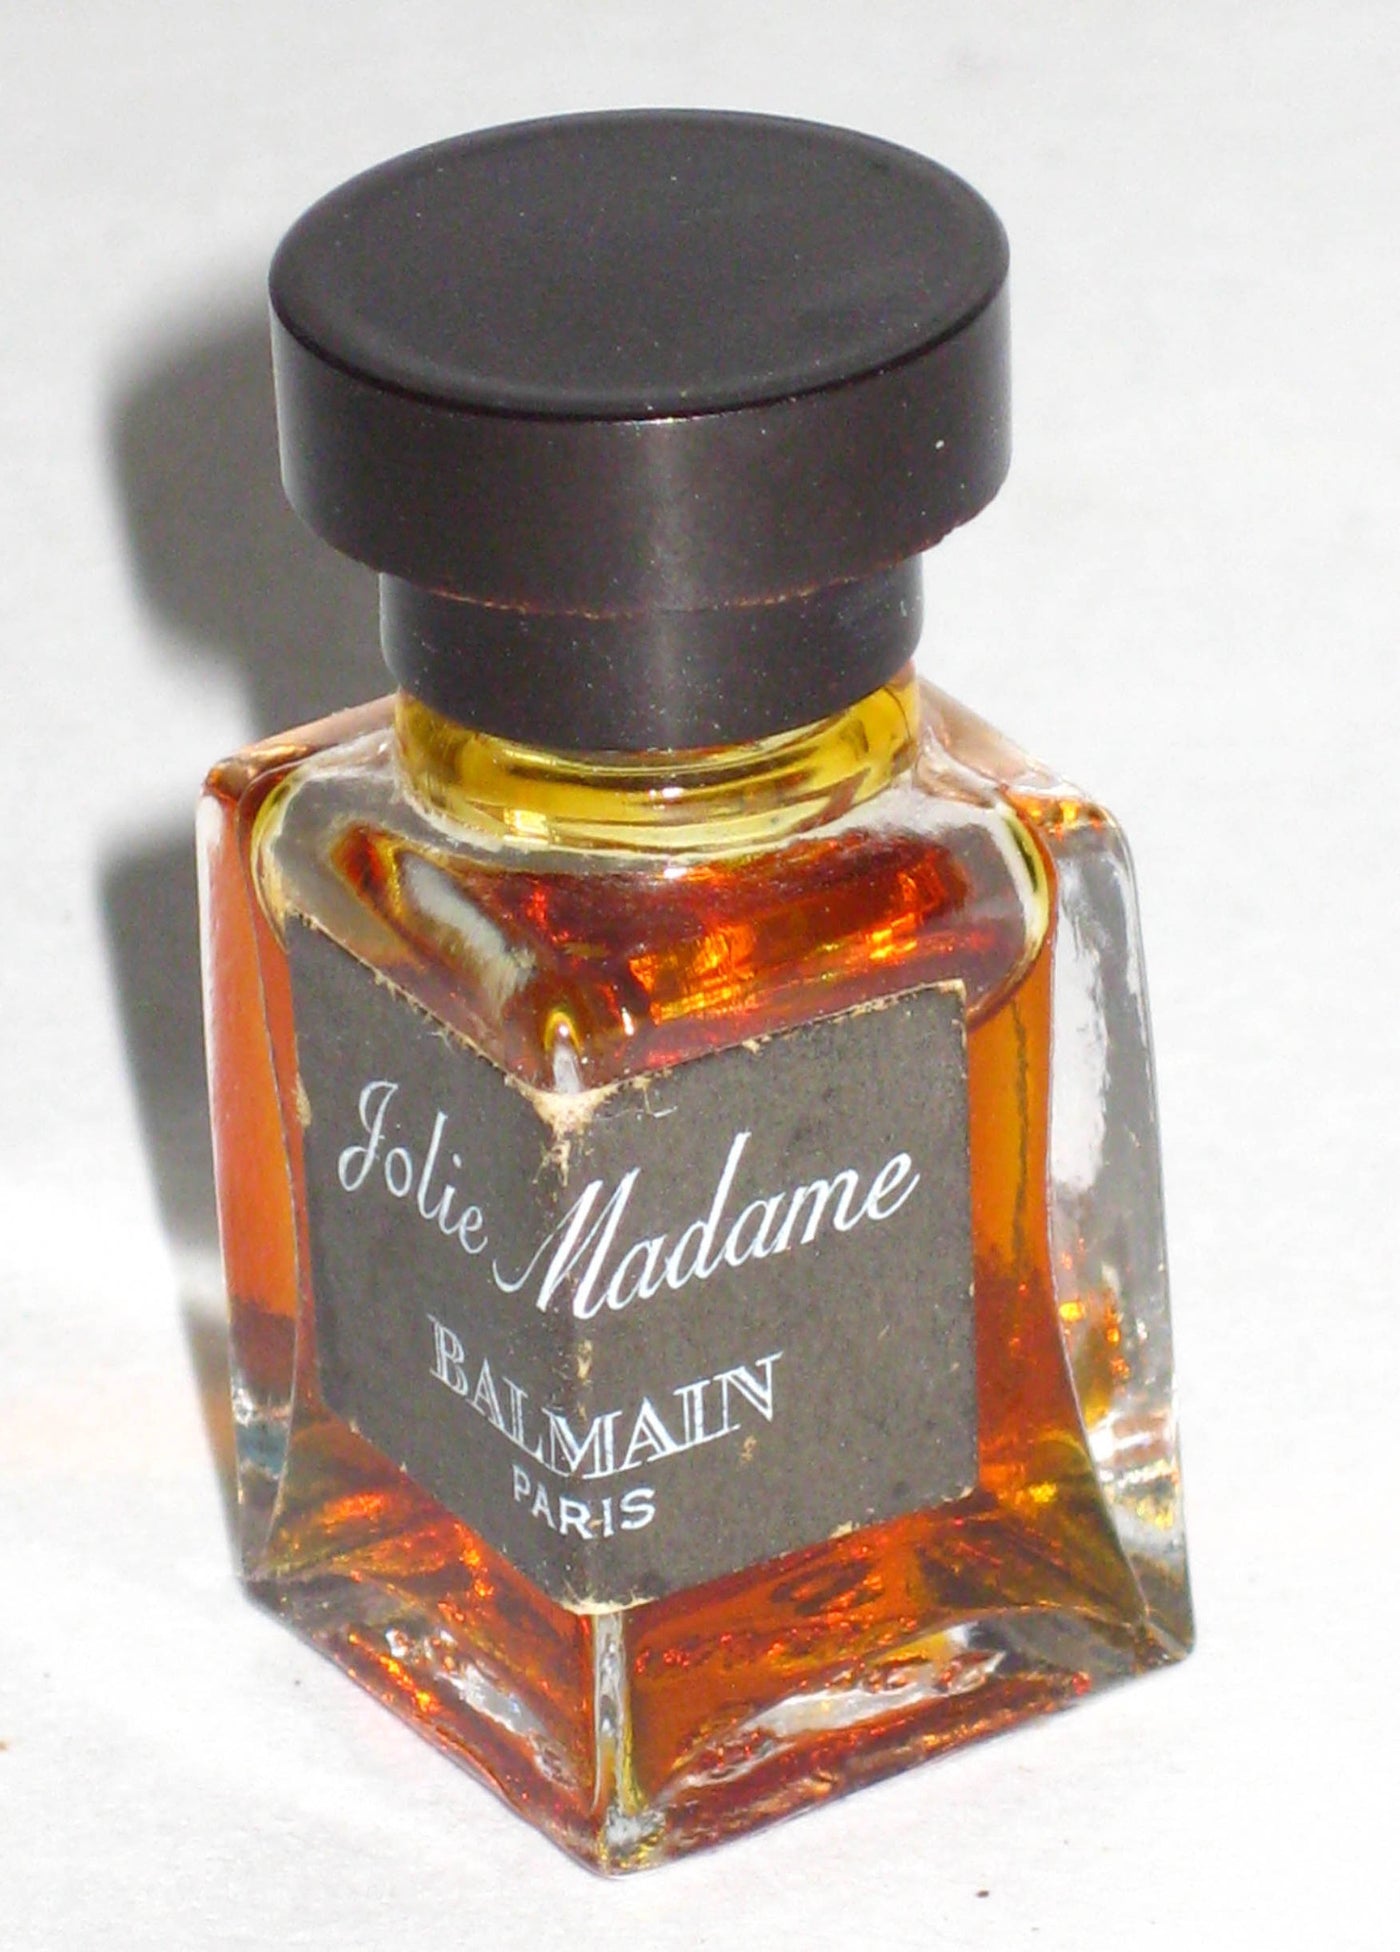 Balmain Jolie Madame Perfume Mini